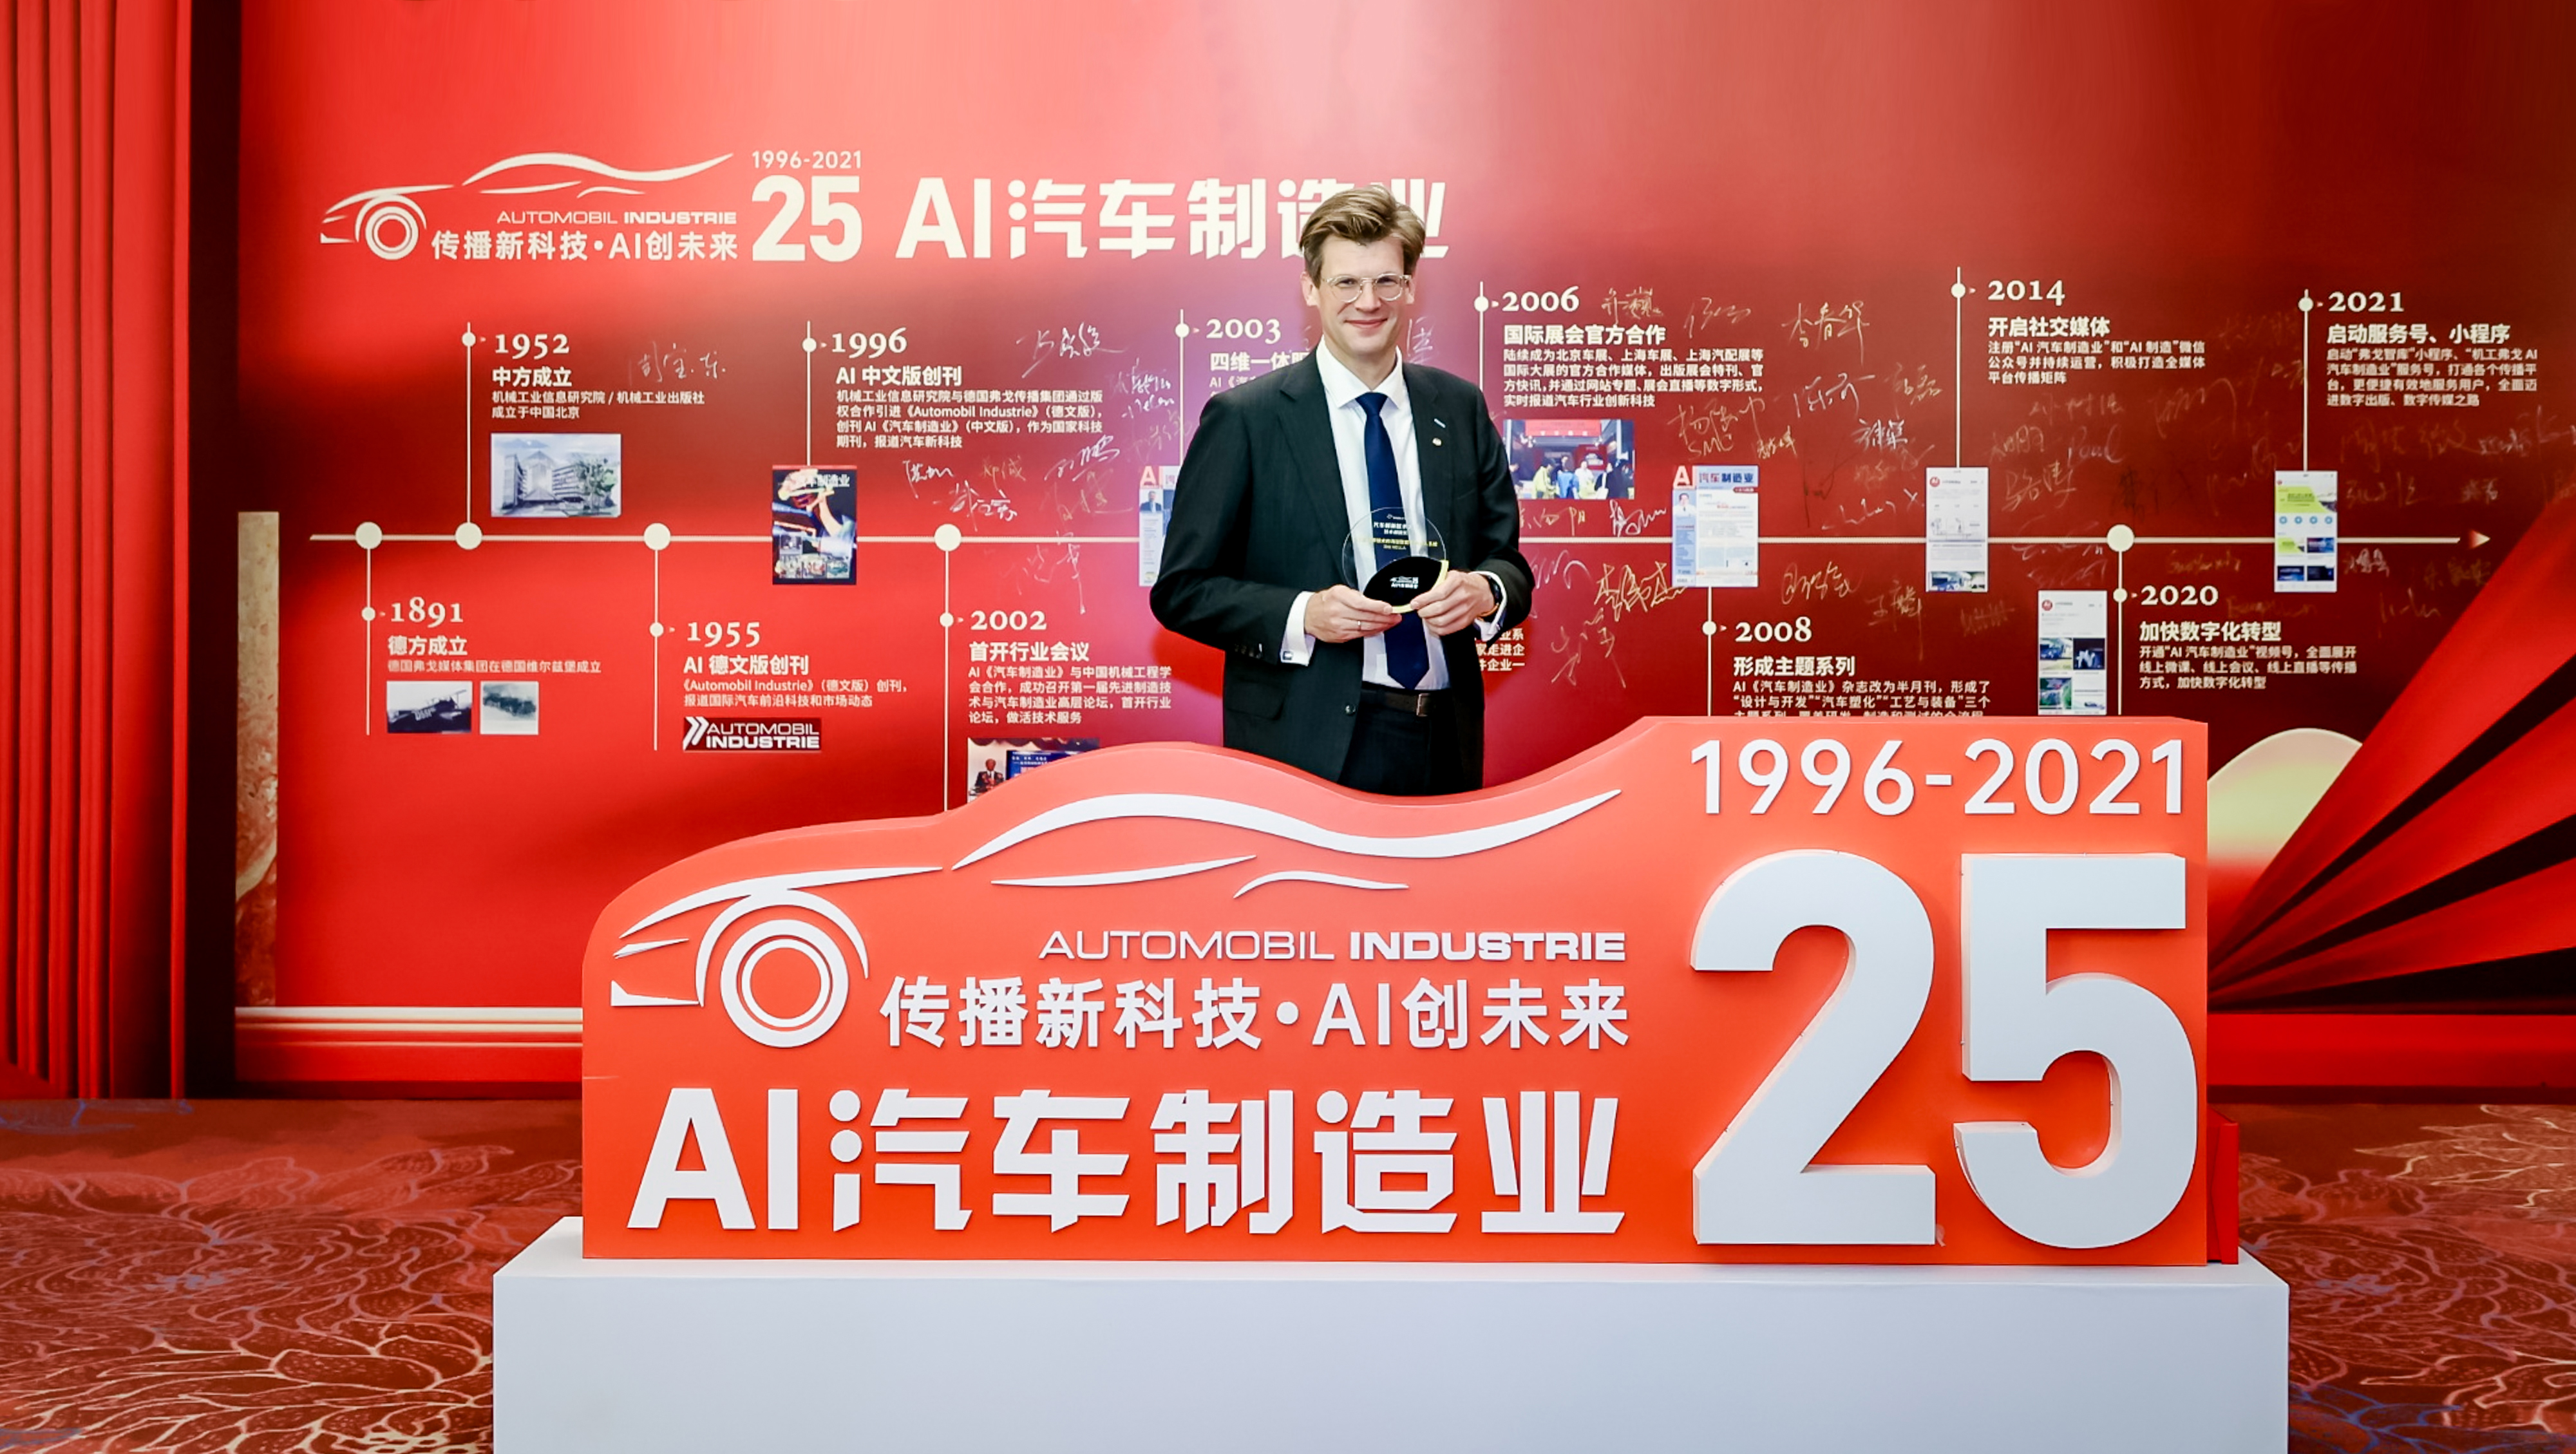 Компания HELLA получила награду за инновации в области системы интеллектуального доступа в автомобиль на базе UWB в Китае